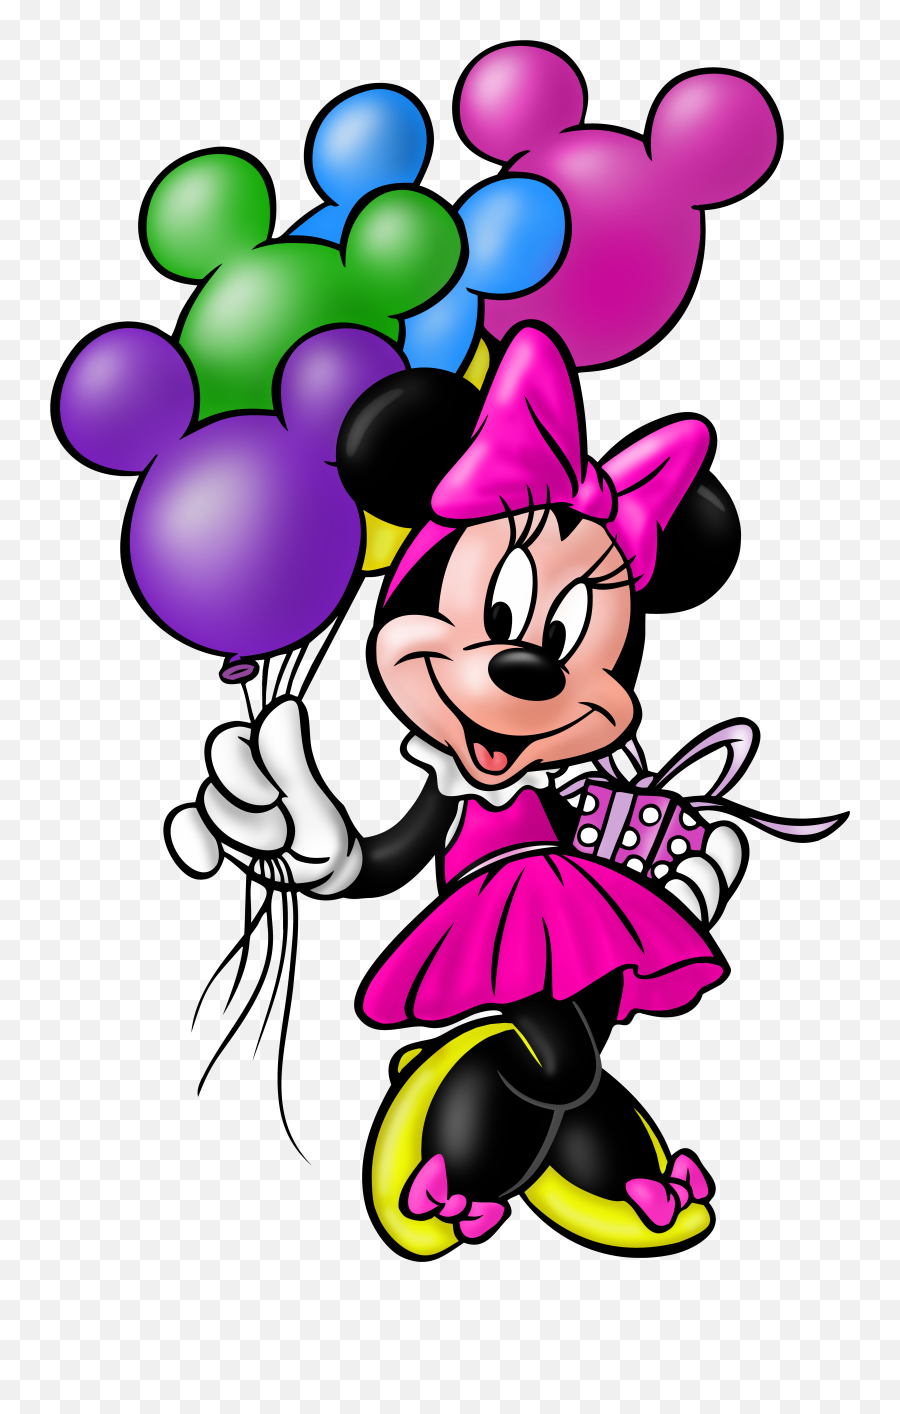 Minnie Mouse Transparent Png Clip Art Image Minnie Mouse - Birthday Minnie Mouse Cartoon Emoji,Mickey Mouse Png